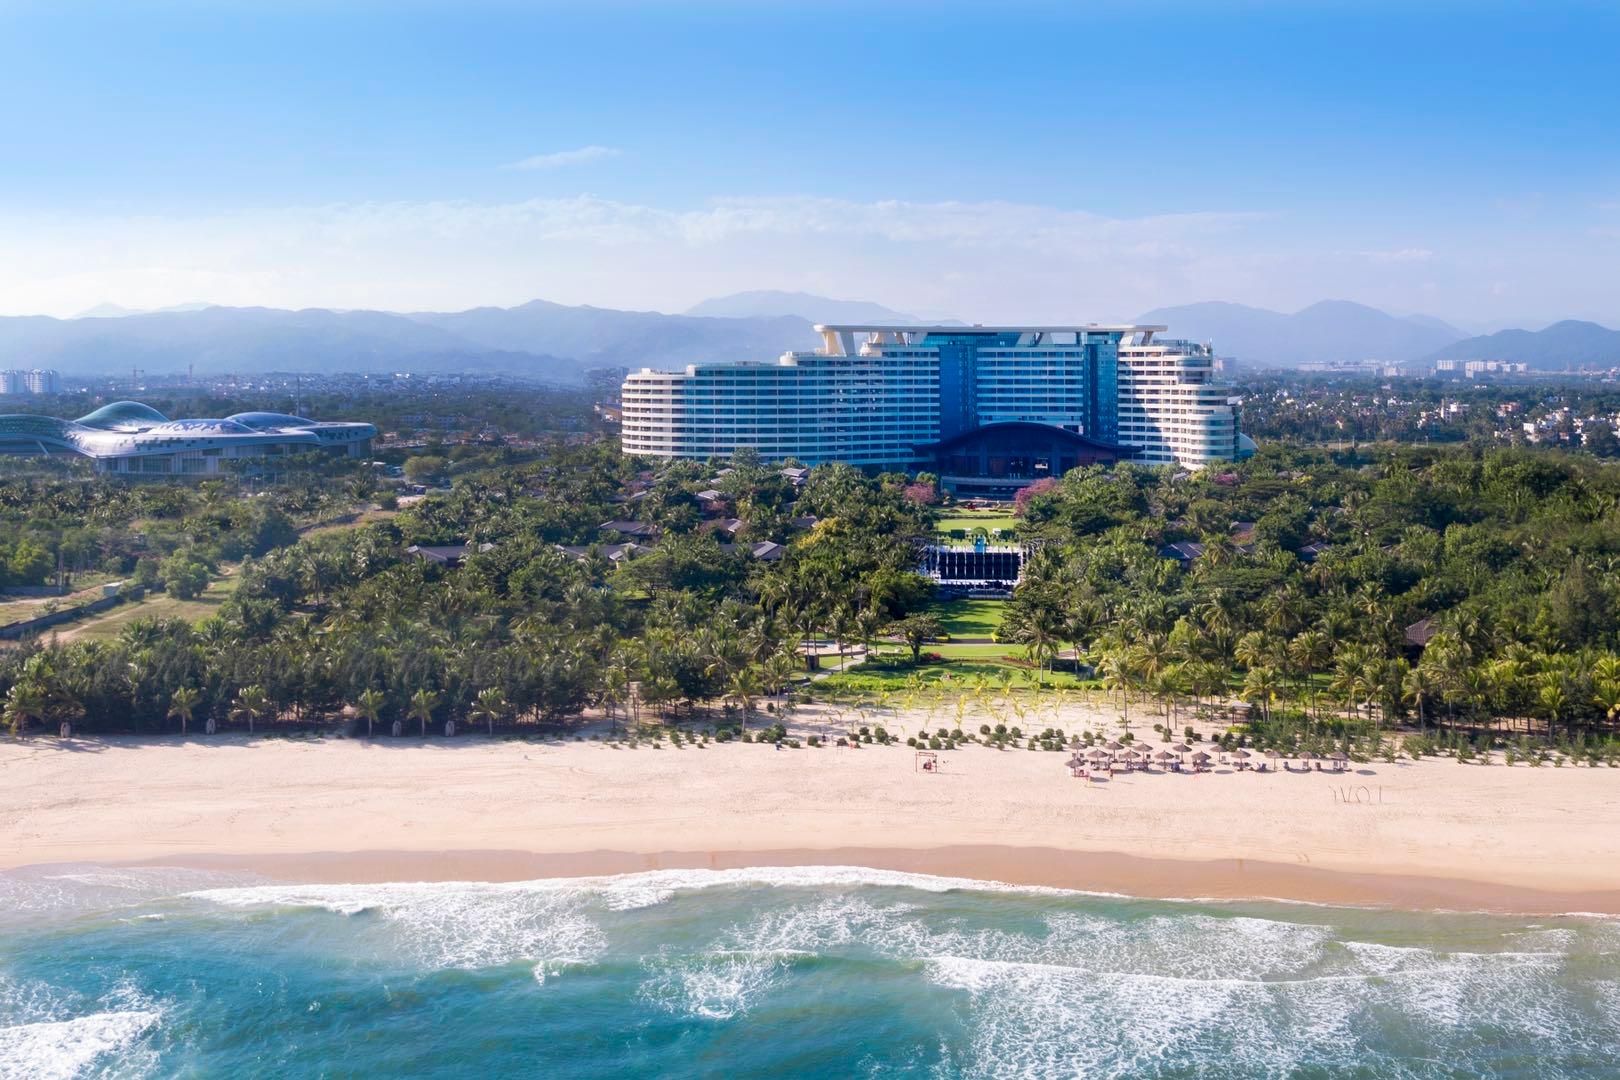 三亚五星级酒店最大容纳950人的会议场地|三亚海棠湾天房洲际度假酒店的价格与联系方式